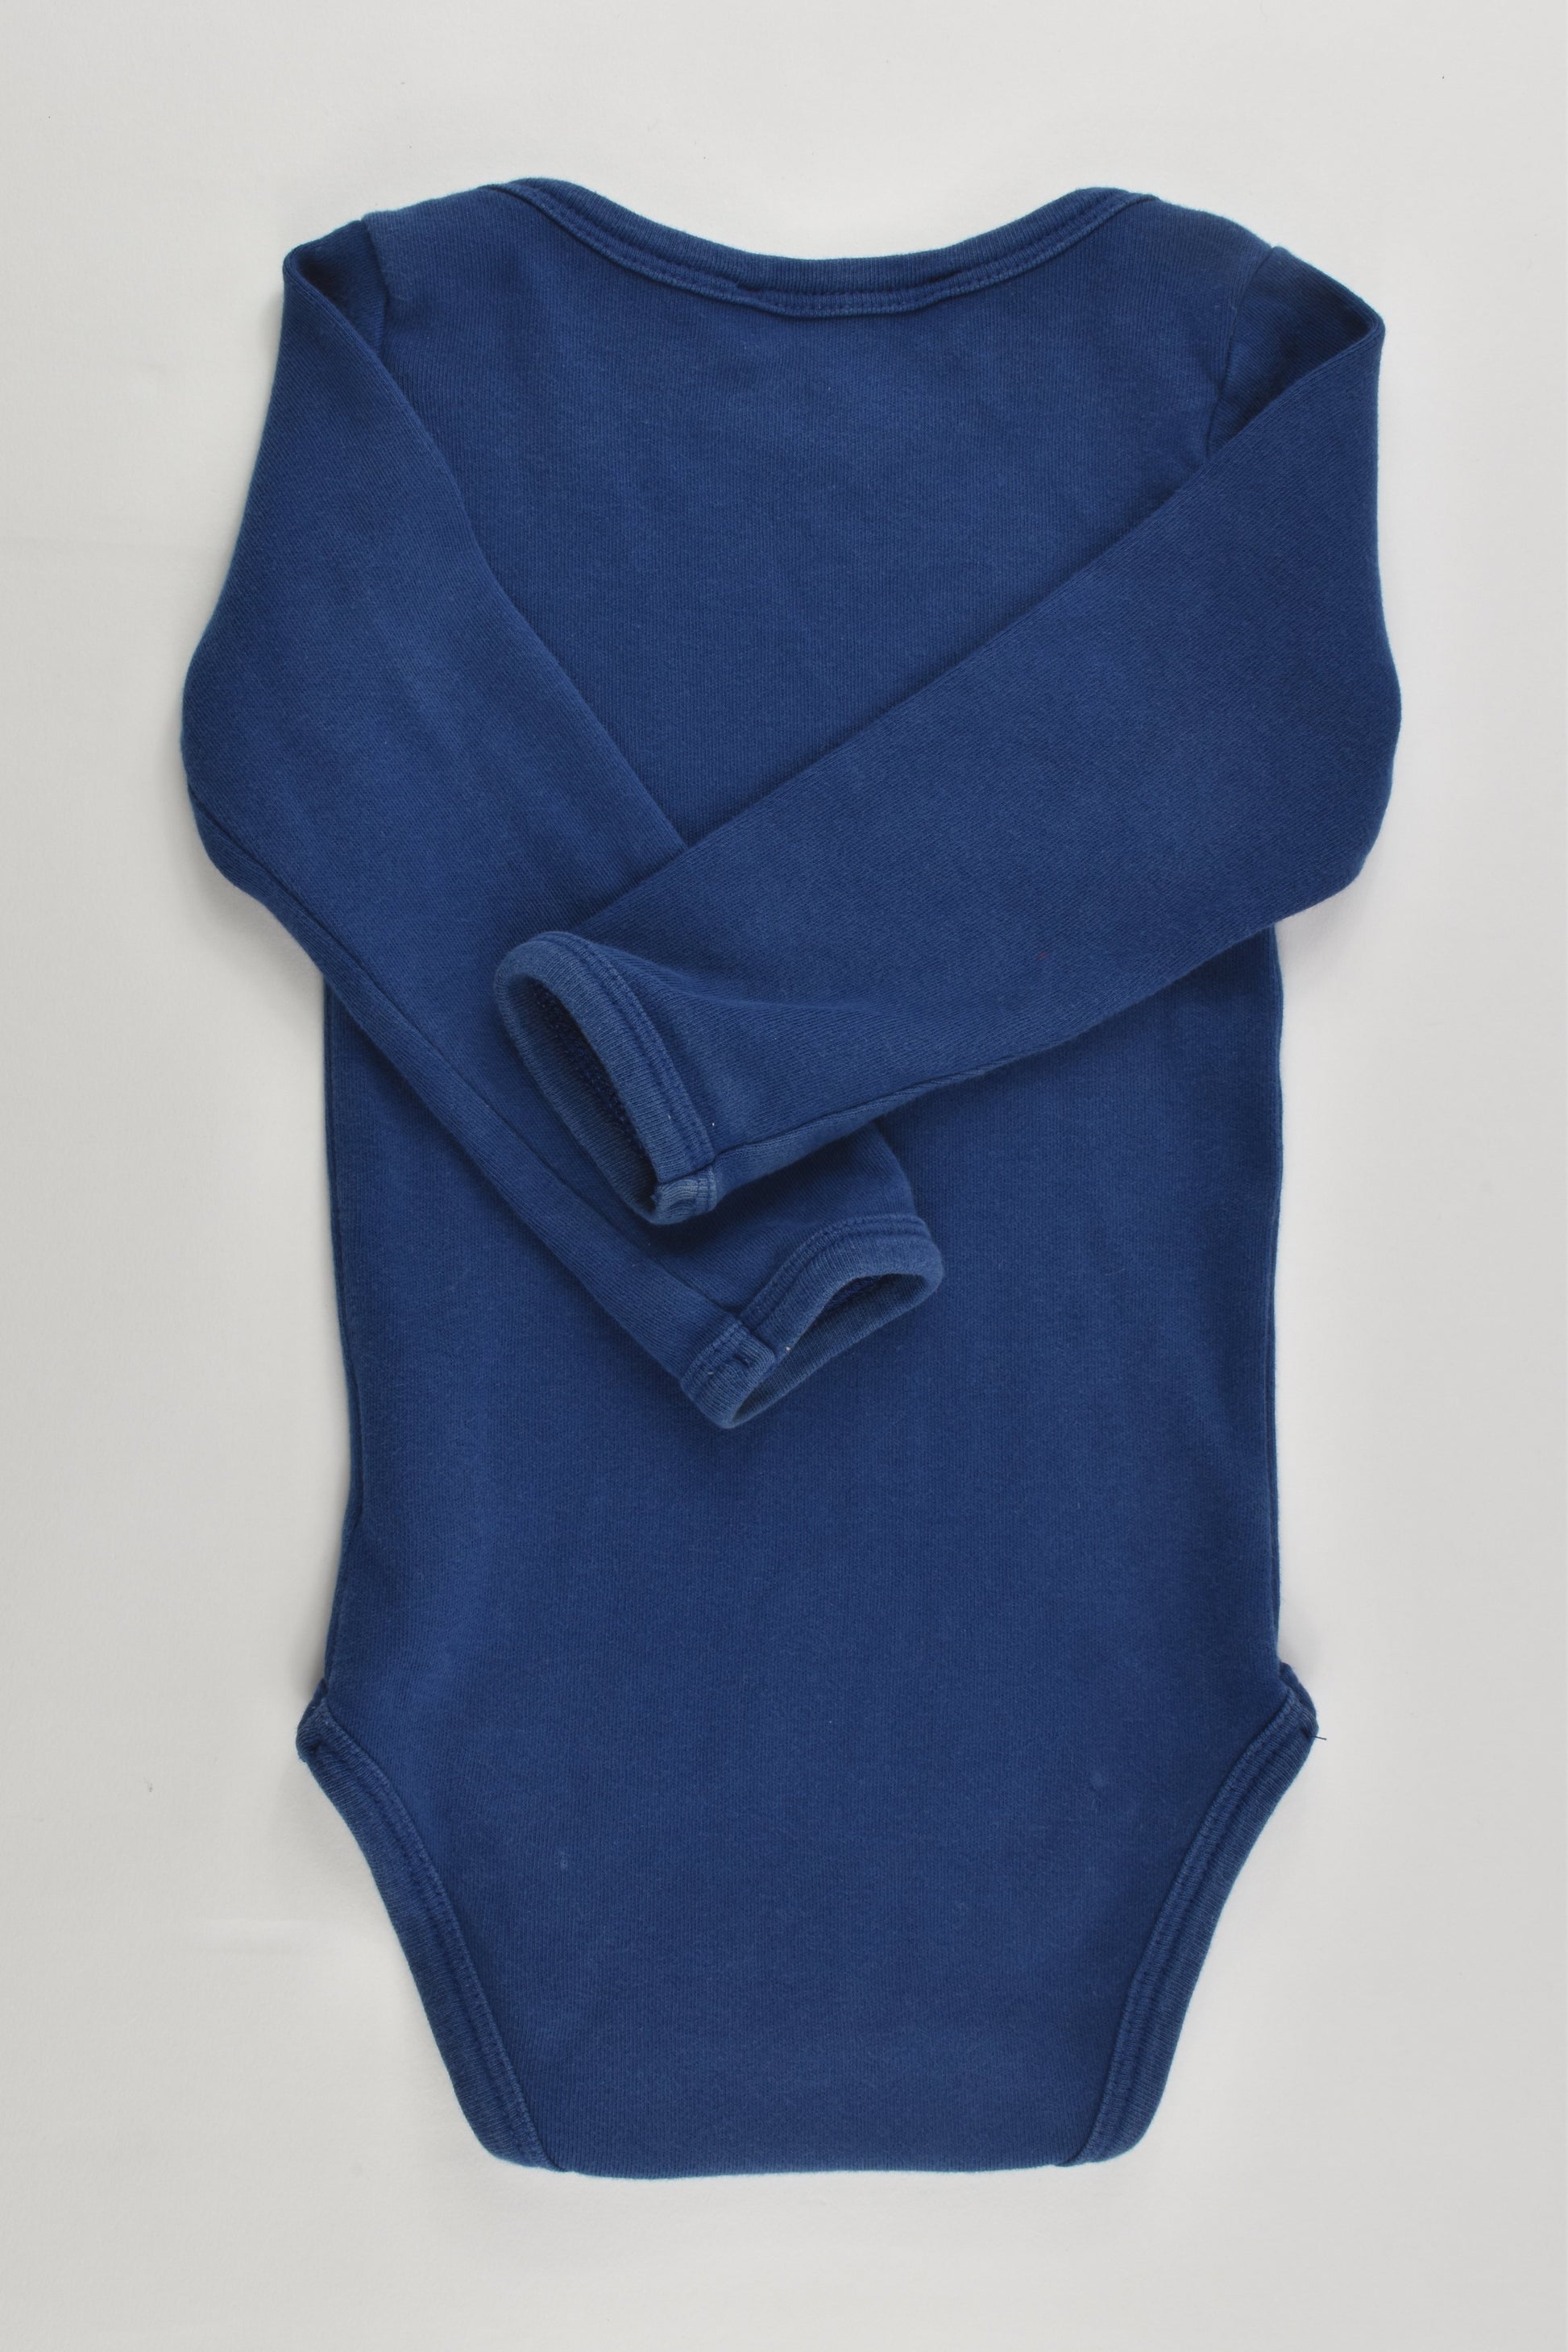 Gro (Denmark) Size 0-1 (80 cm) Organic Cotton Bodysuit